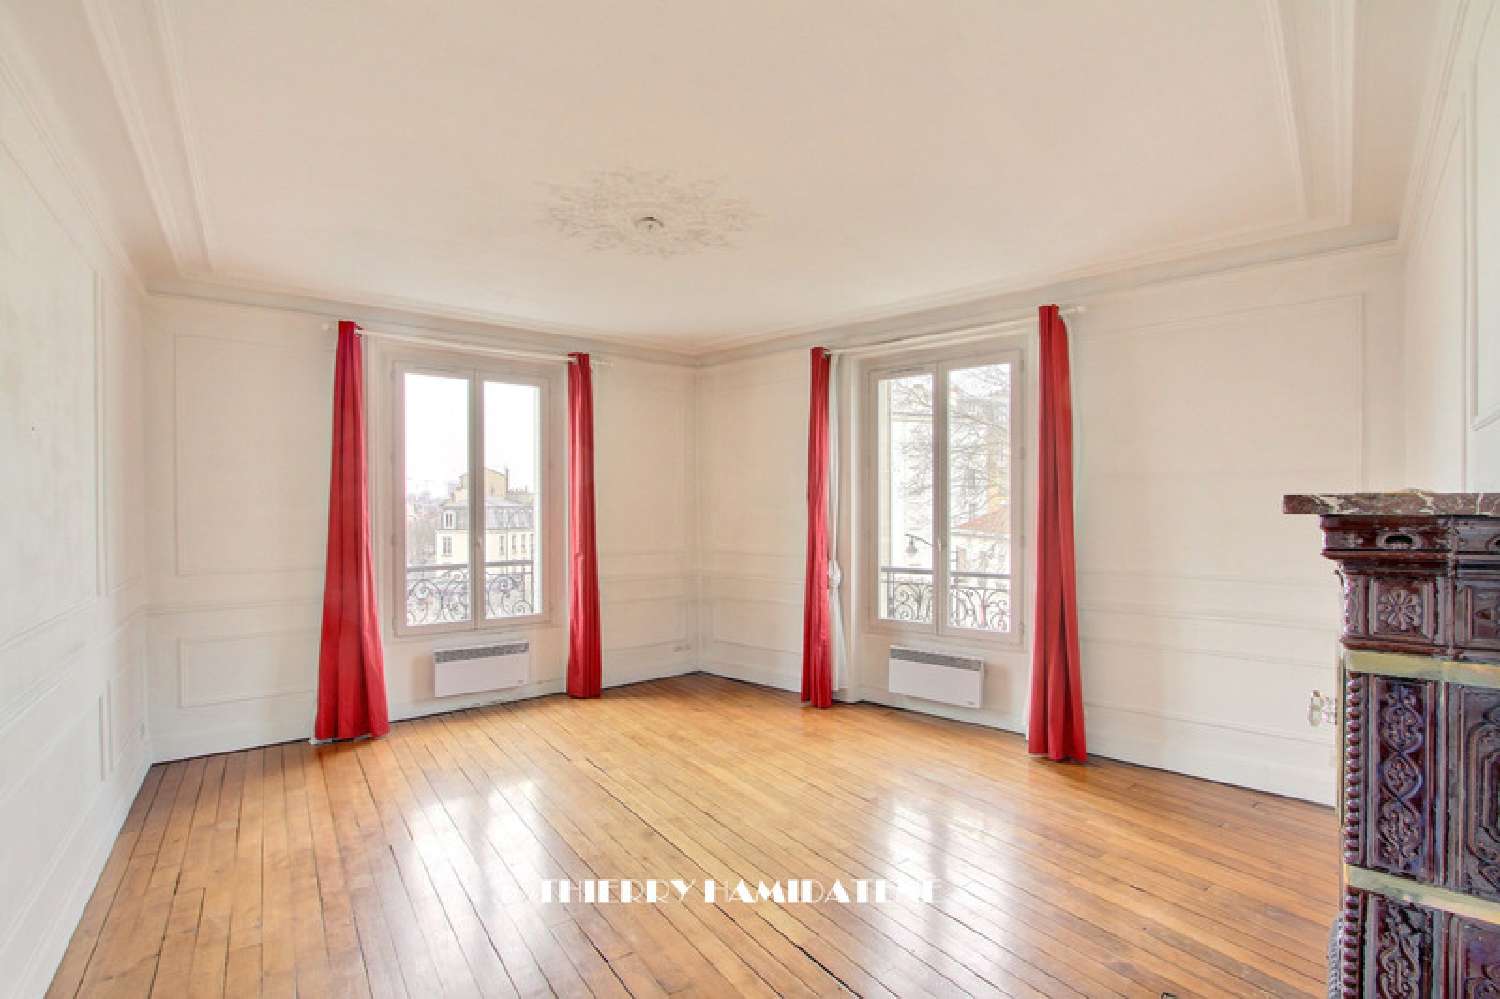  à vendre appartement La Garenne-Colombes Hauts-de-Seine 1